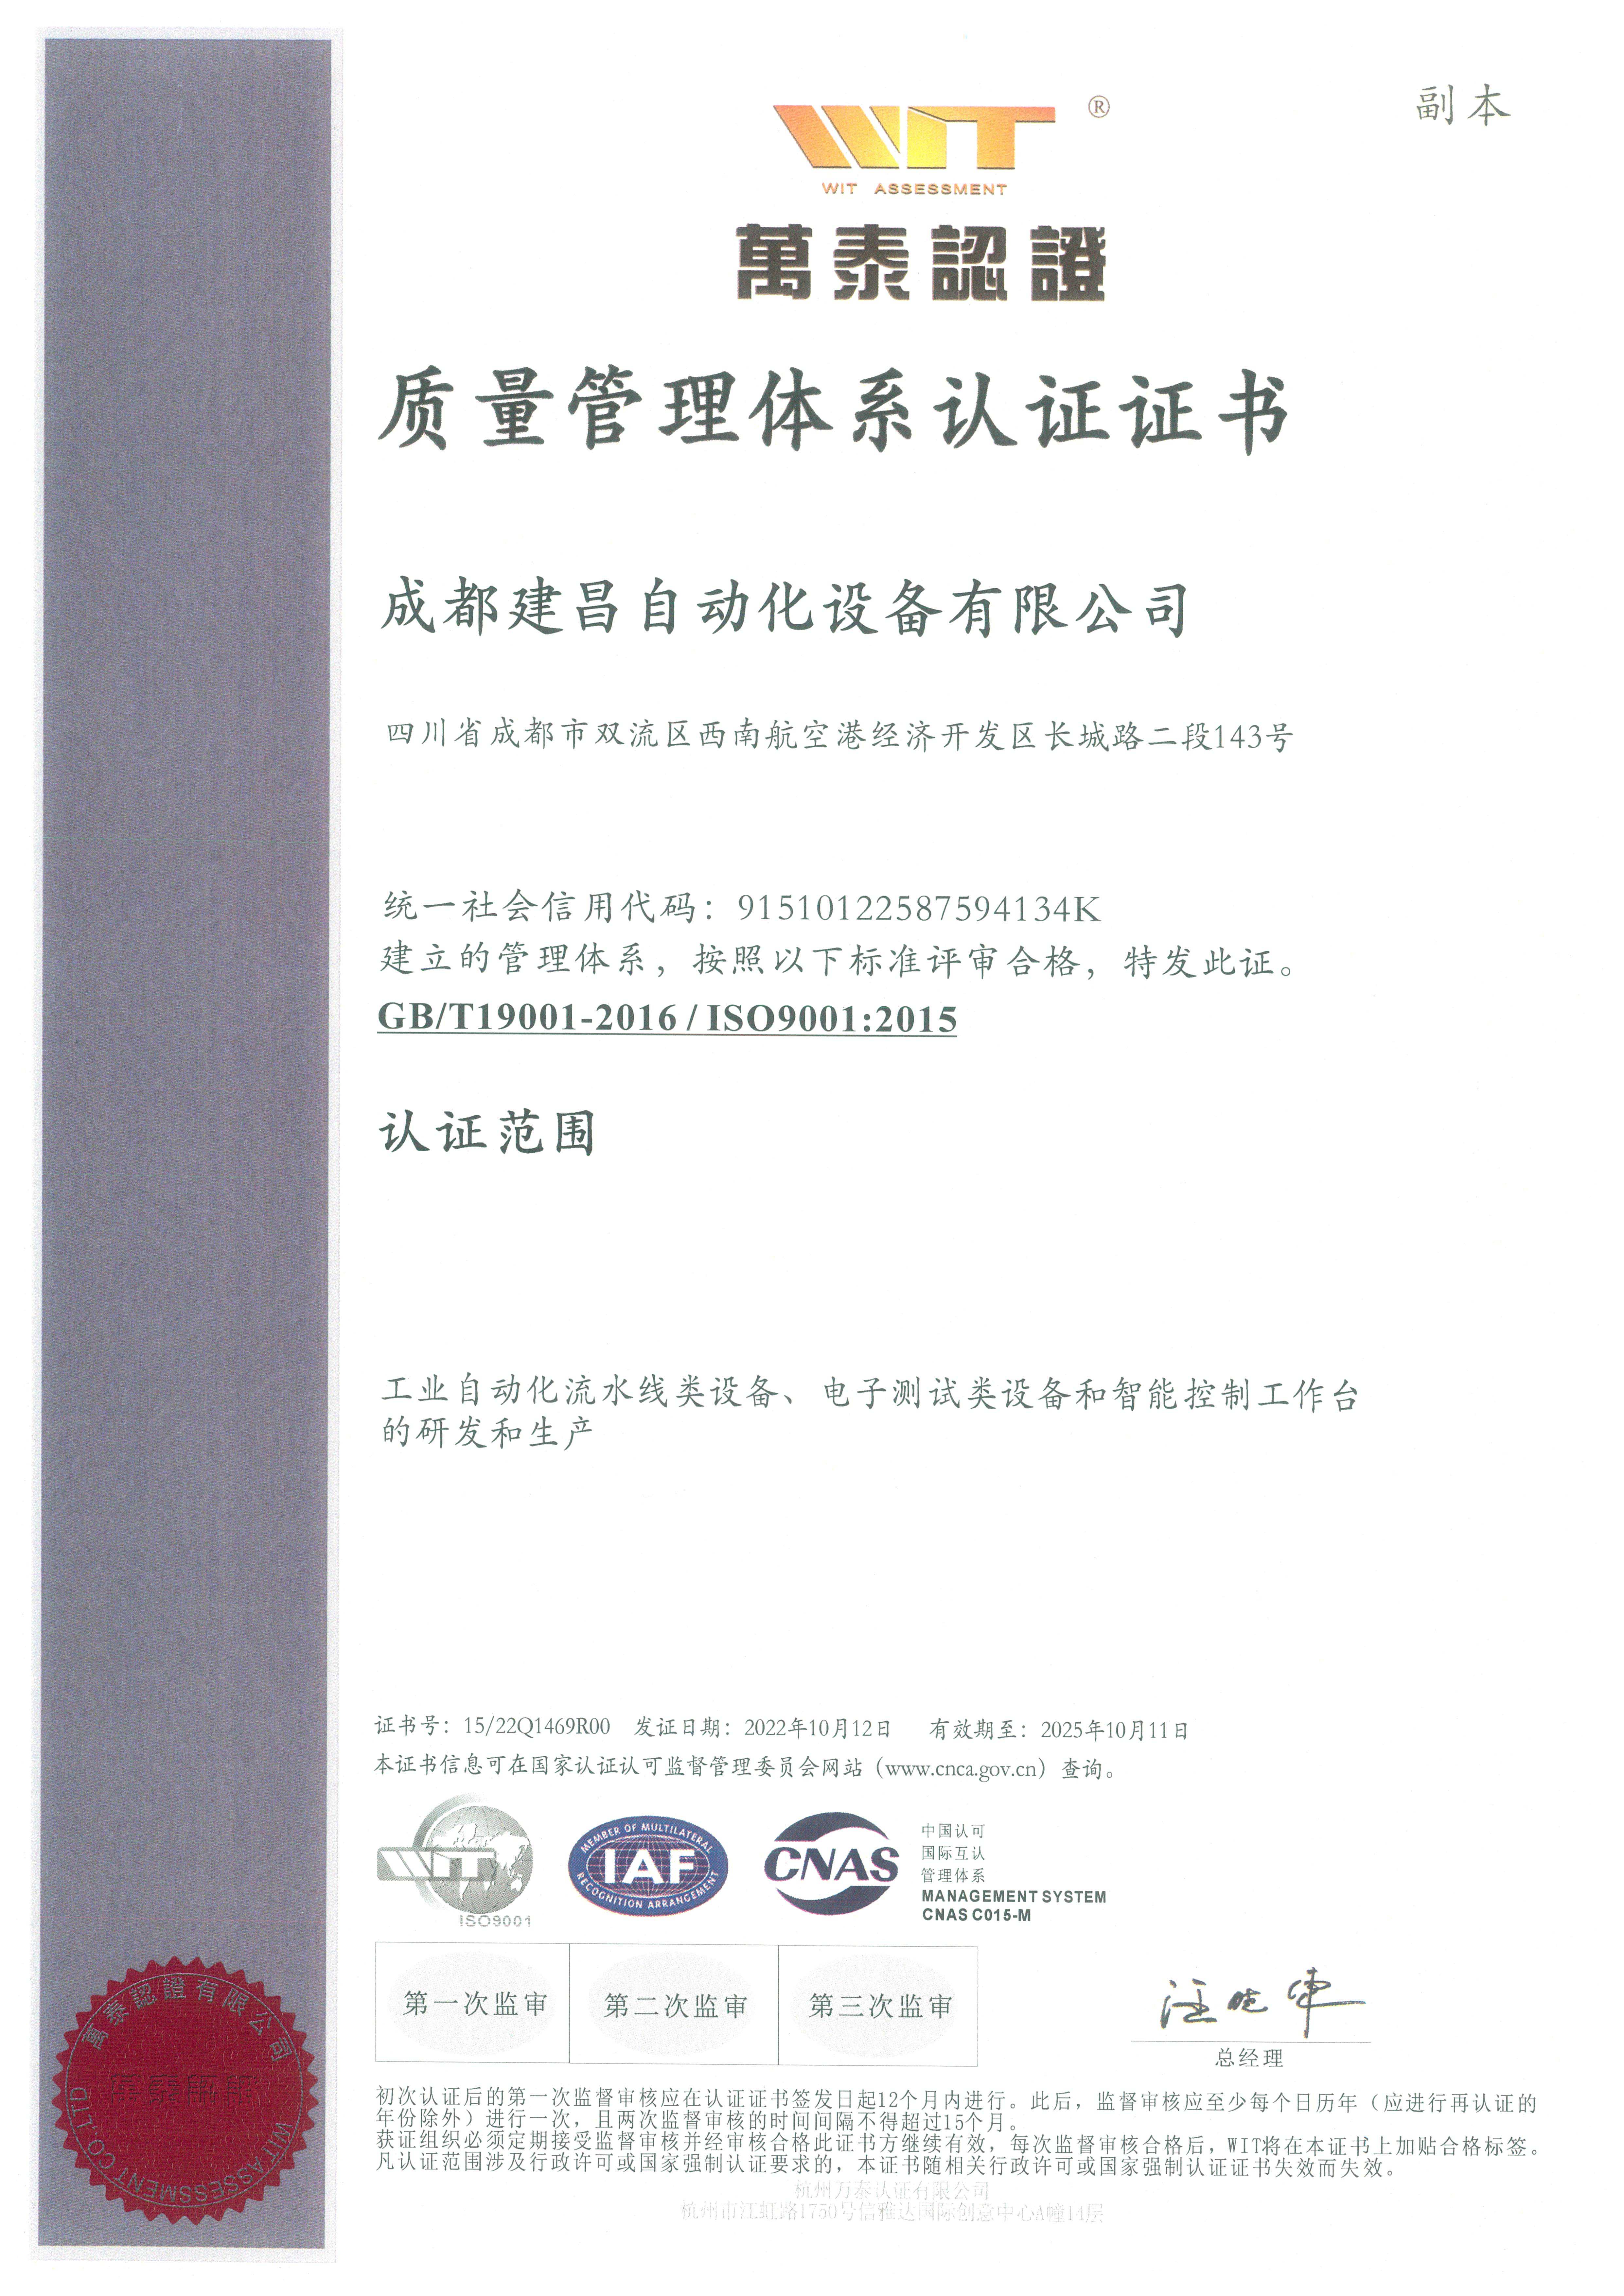 万泰认证ISO9001副本 拷贝.jpg